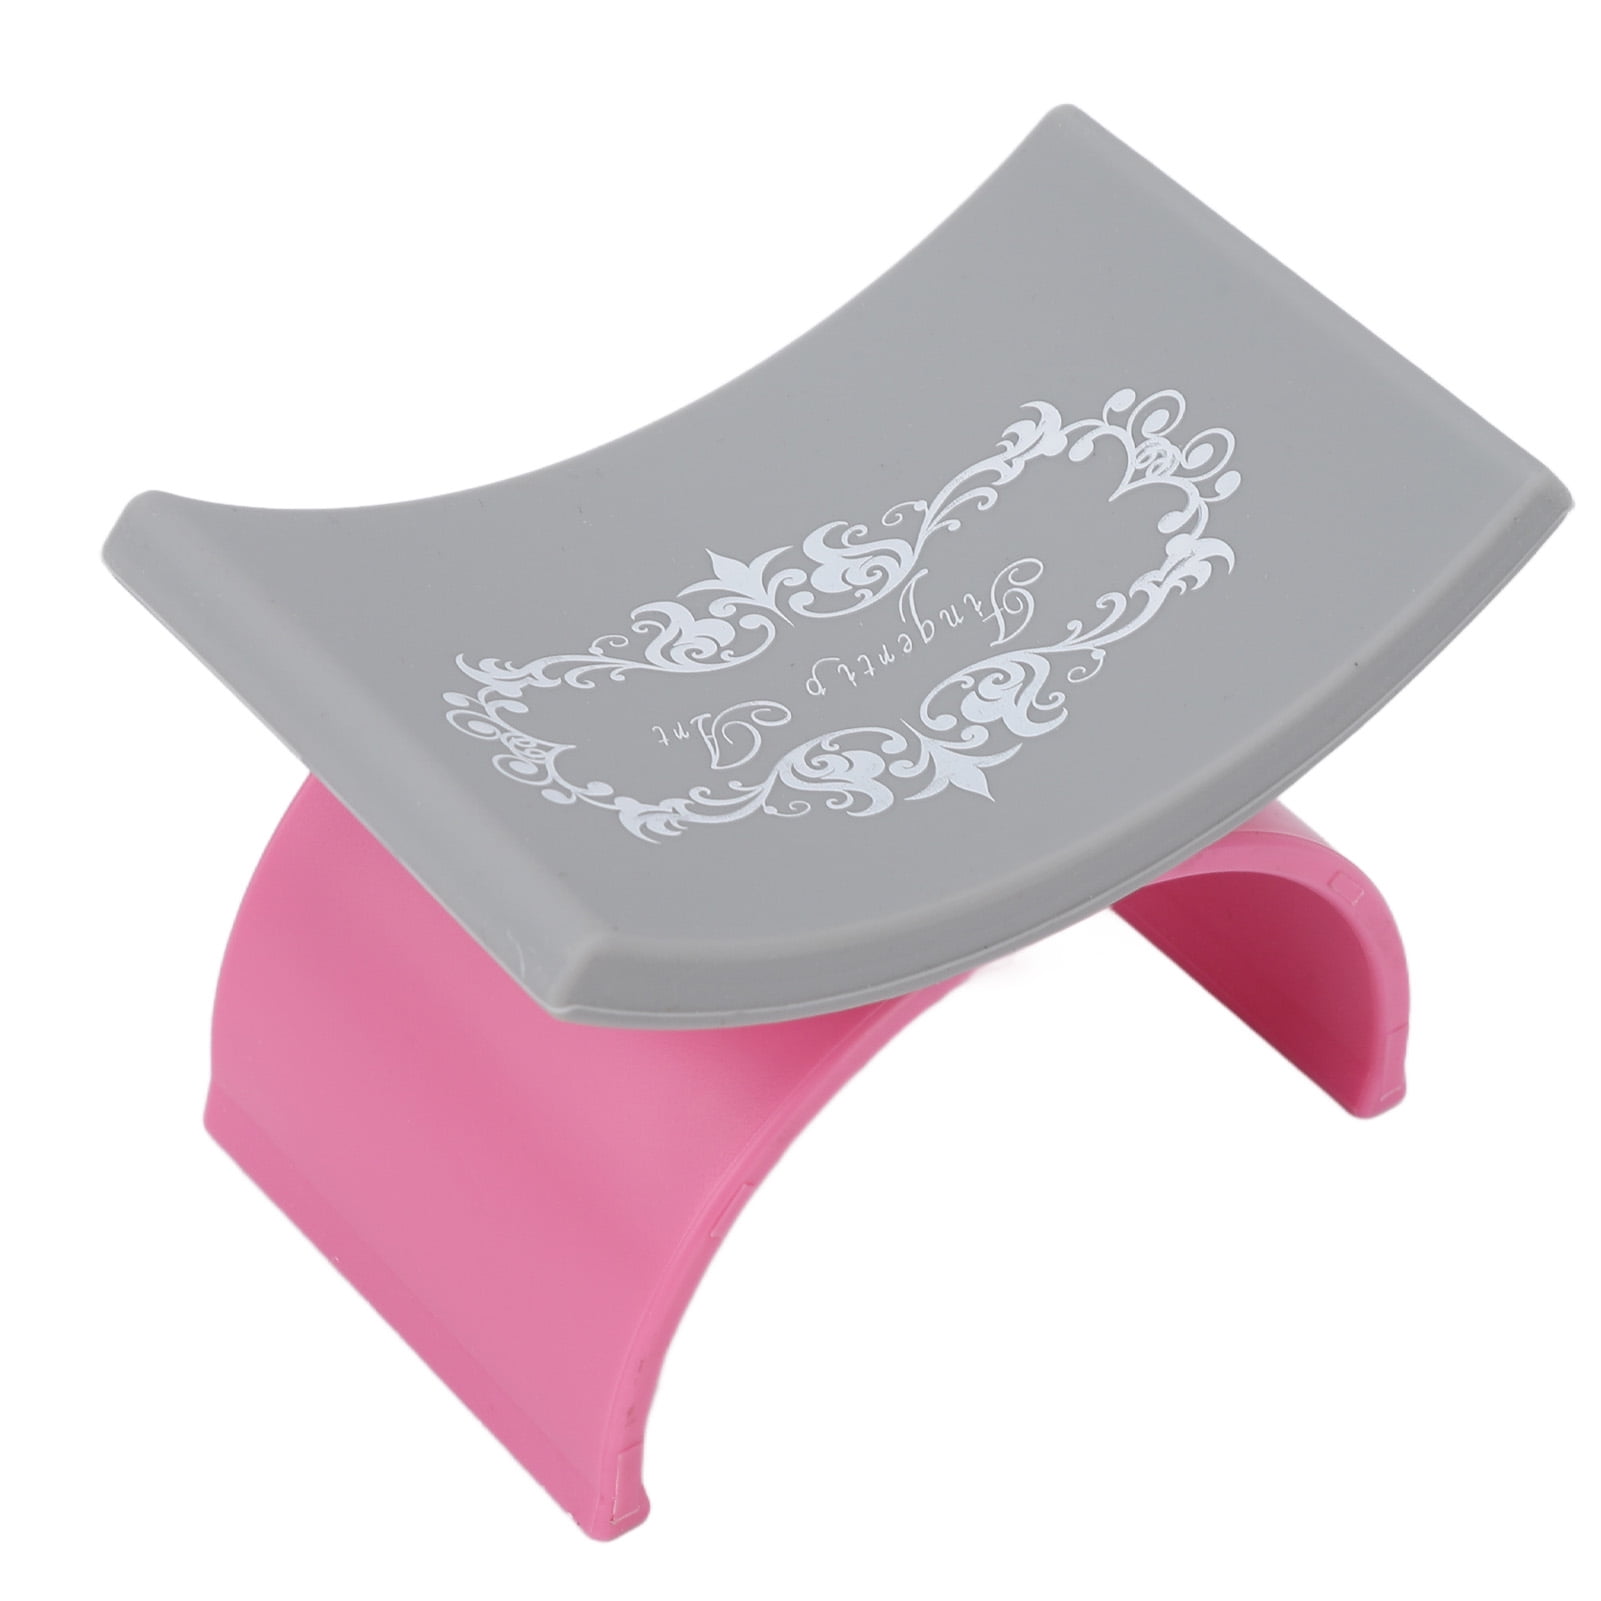 Pink LV Arm rest 😍✨💕💅🏾 #orlandonailtech #armrest #nailtechfinds #p, Nailtech